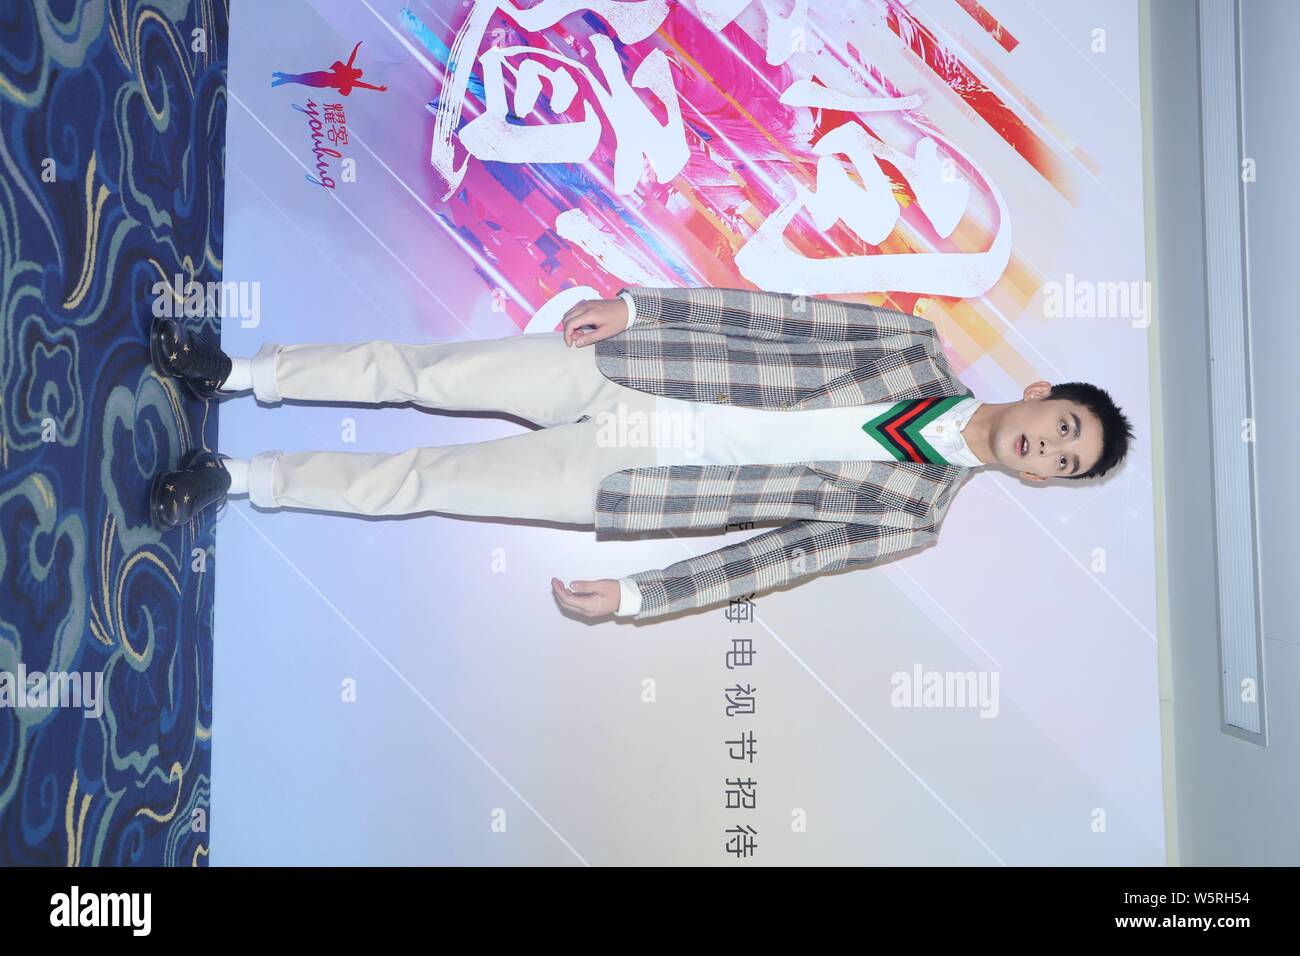 Chinesische Schauspieler Leo Wu Lei besucht eine Pressekonferenz für neue TV-Serie "Cross Fire" produziert von Shanghai Youhug Media Co. Ltd. in Shanghai, China, 11 Ju Stockfoto